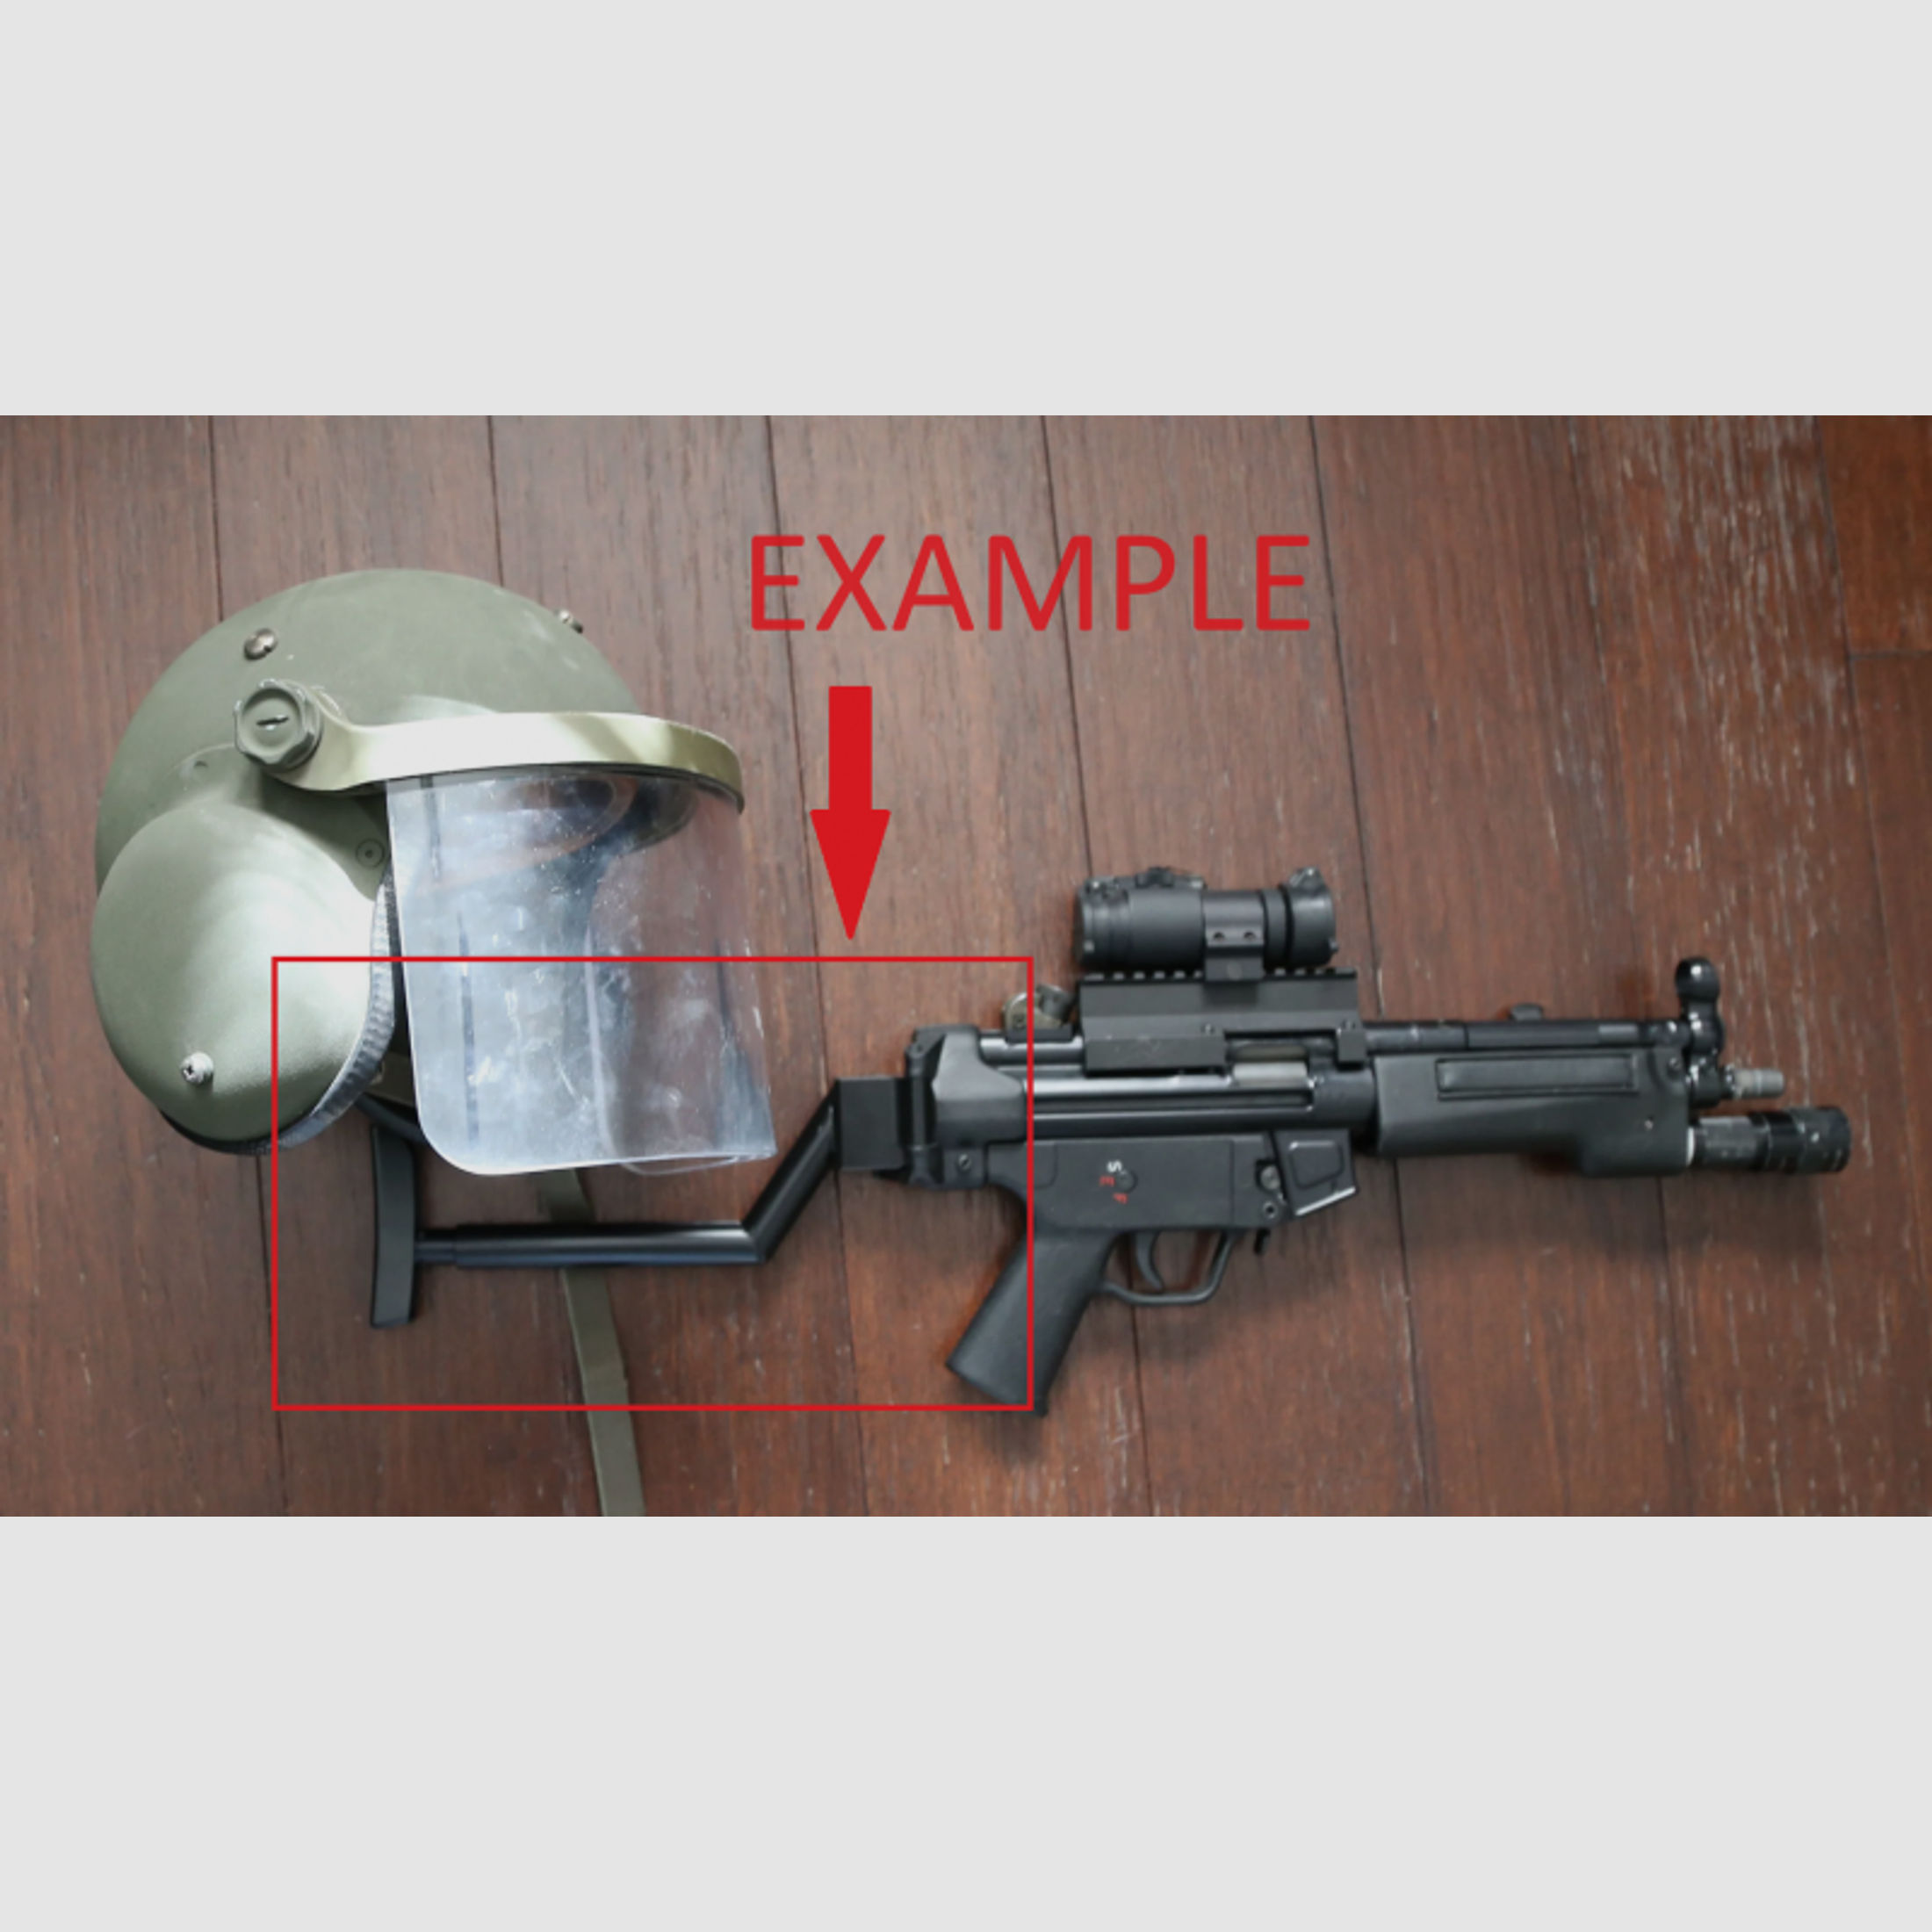 UNIKAT HK MP5 B&T schulterstütze klappbar Niederlande / Hollandische special forces / polizei / GSG9